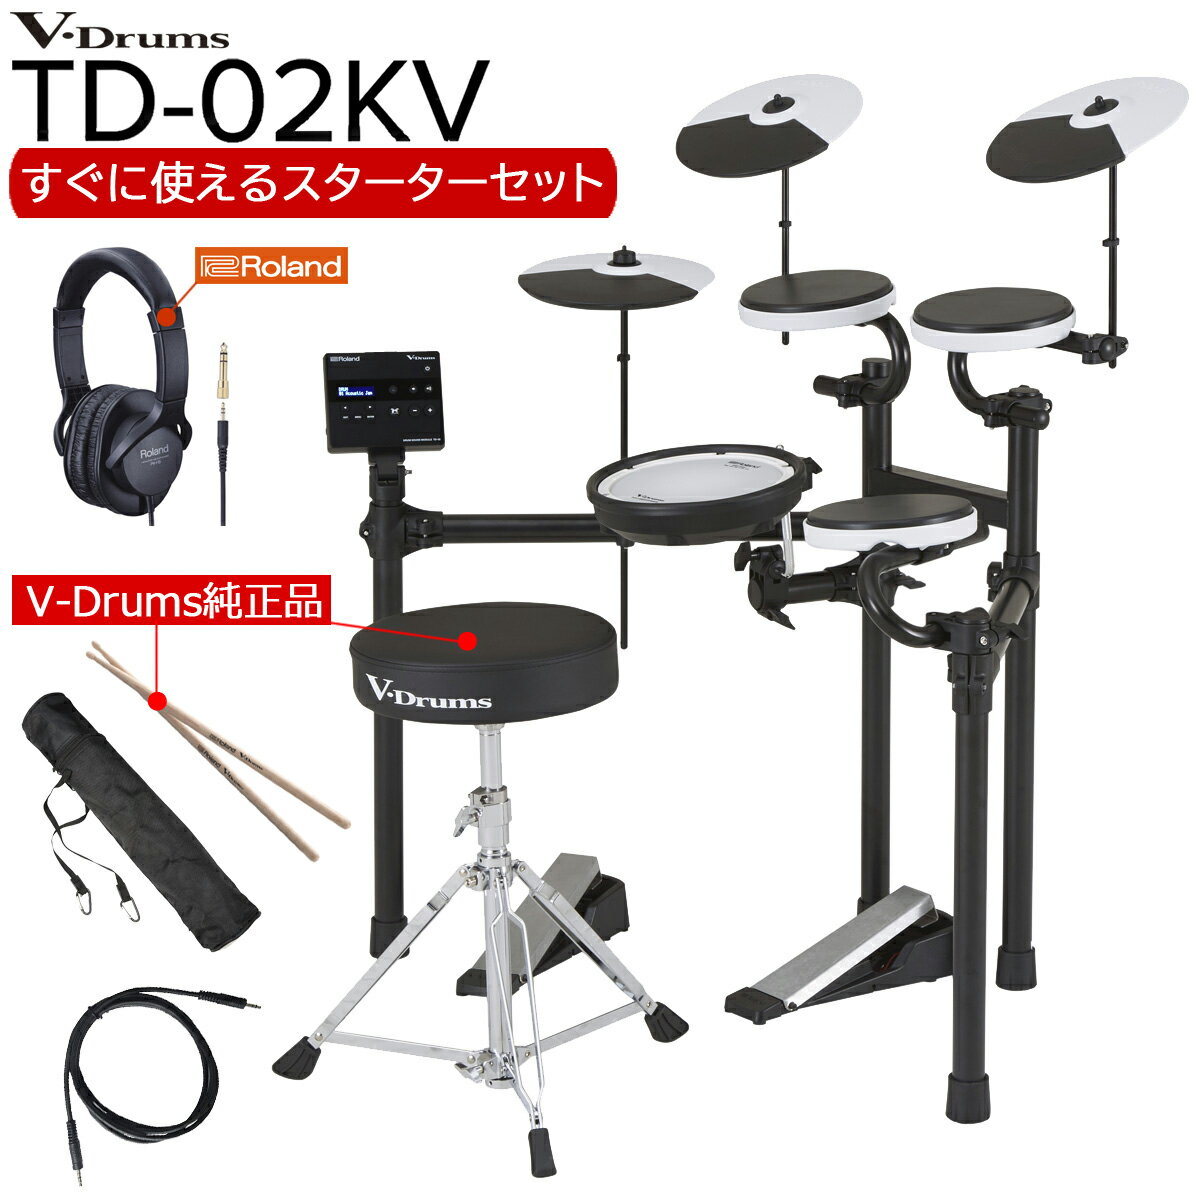 Roland / TD-02KV すぐに使えるスターターセットVer3 (純正ドラム椅子とヘッドホン)【YRK】